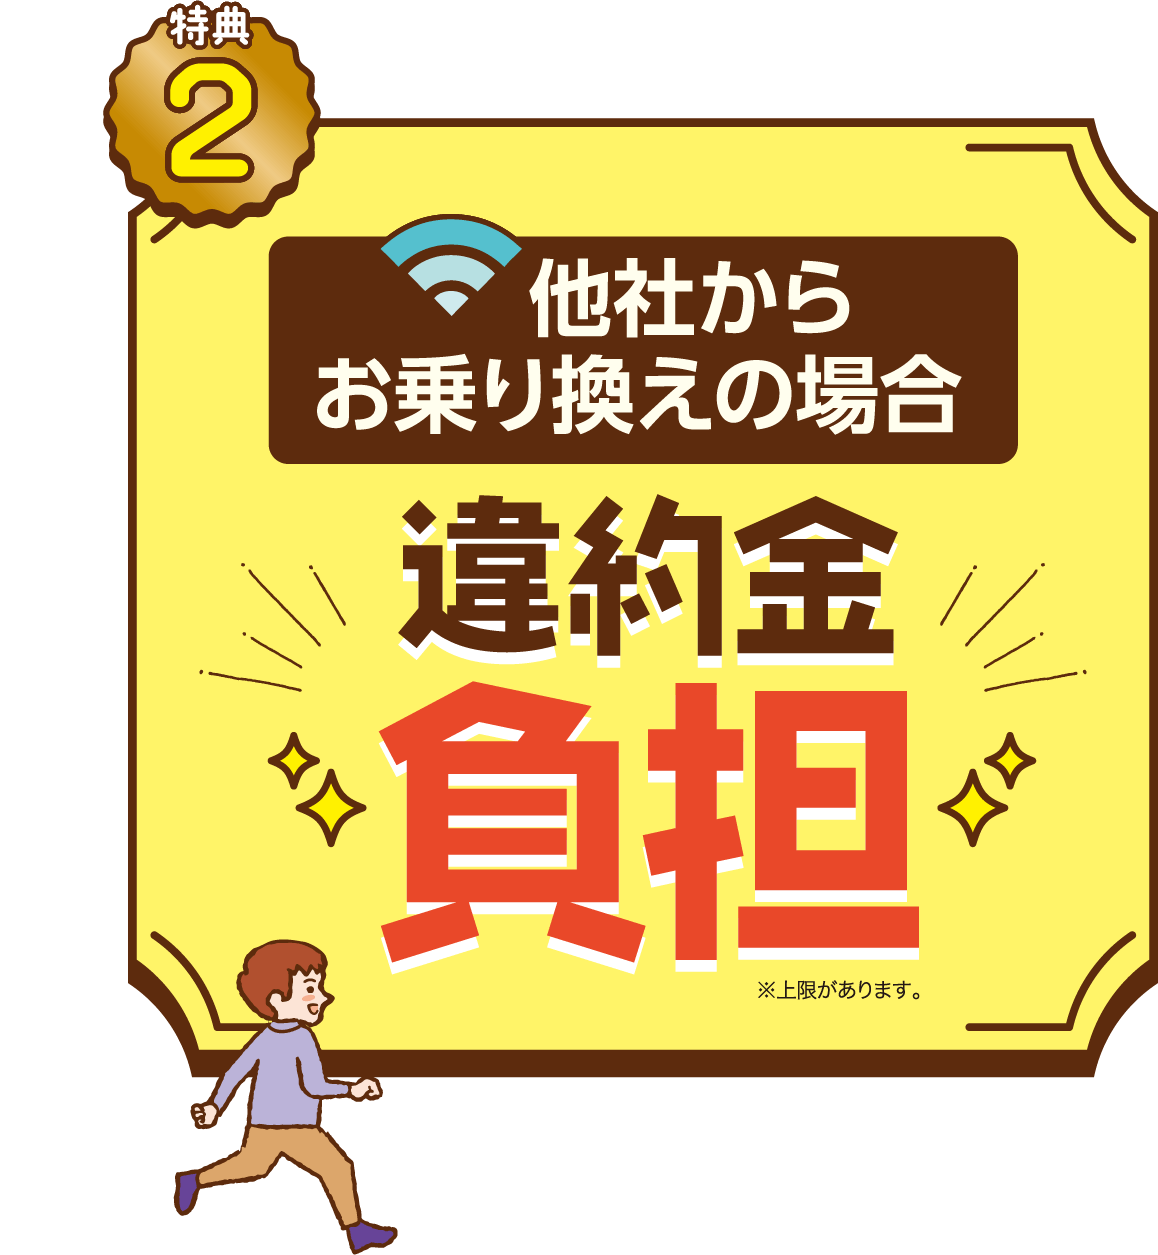 Wi-Fiレンタル無料